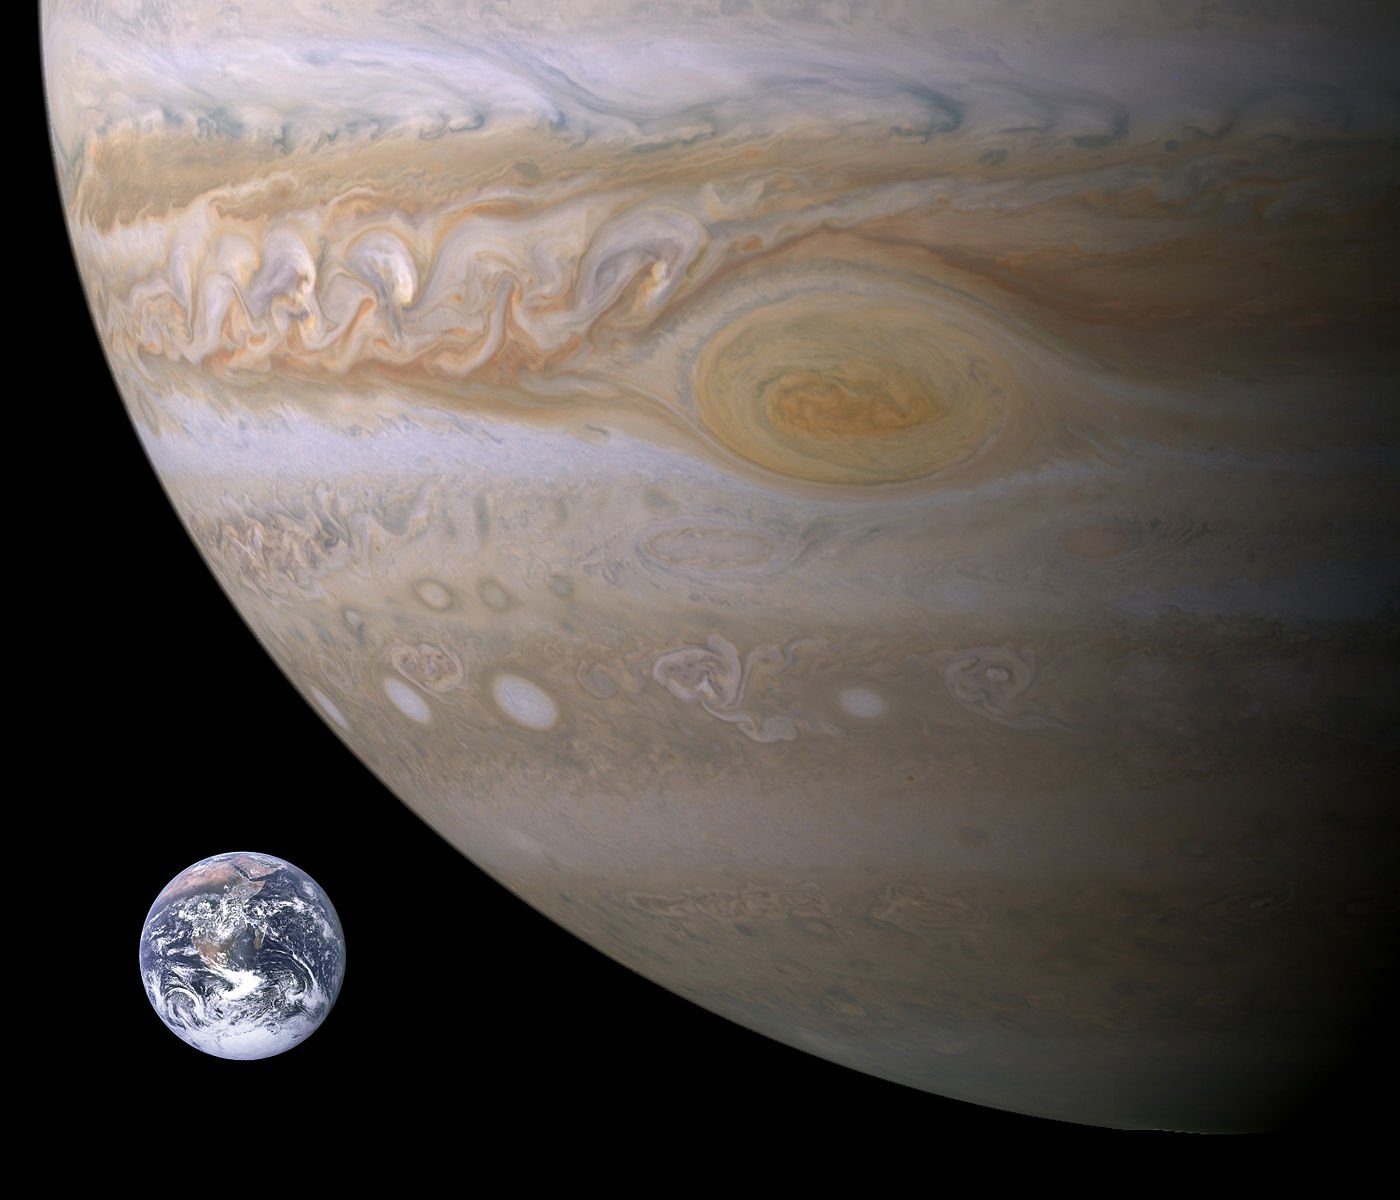 Imagem comparativa dos tamanhos da Terra e de Júpiter com a Grande Mancha Vermelha em destaque